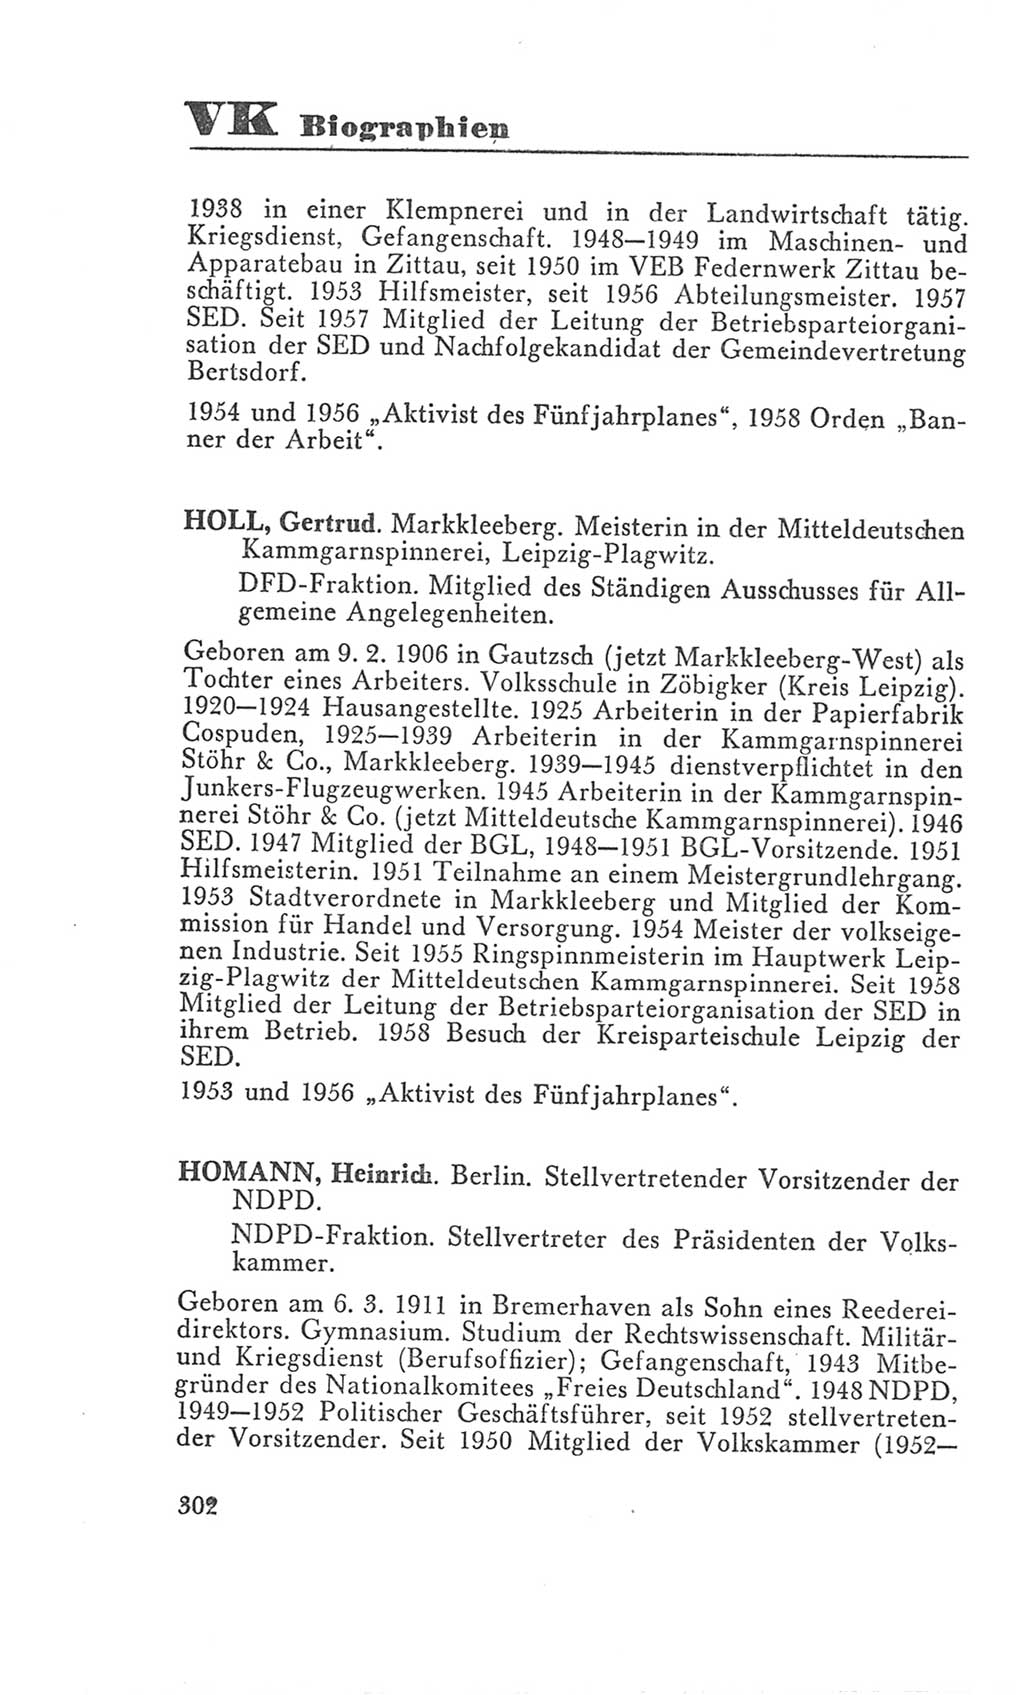 Handbuch der Volkskammer (VK) der Deutschen Demokratischen Republik (DDR), 3. Wahlperiode 1958-1963, Seite 302 (Hdb. VK. DDR 3. WP. 1958-1963, S. 302)